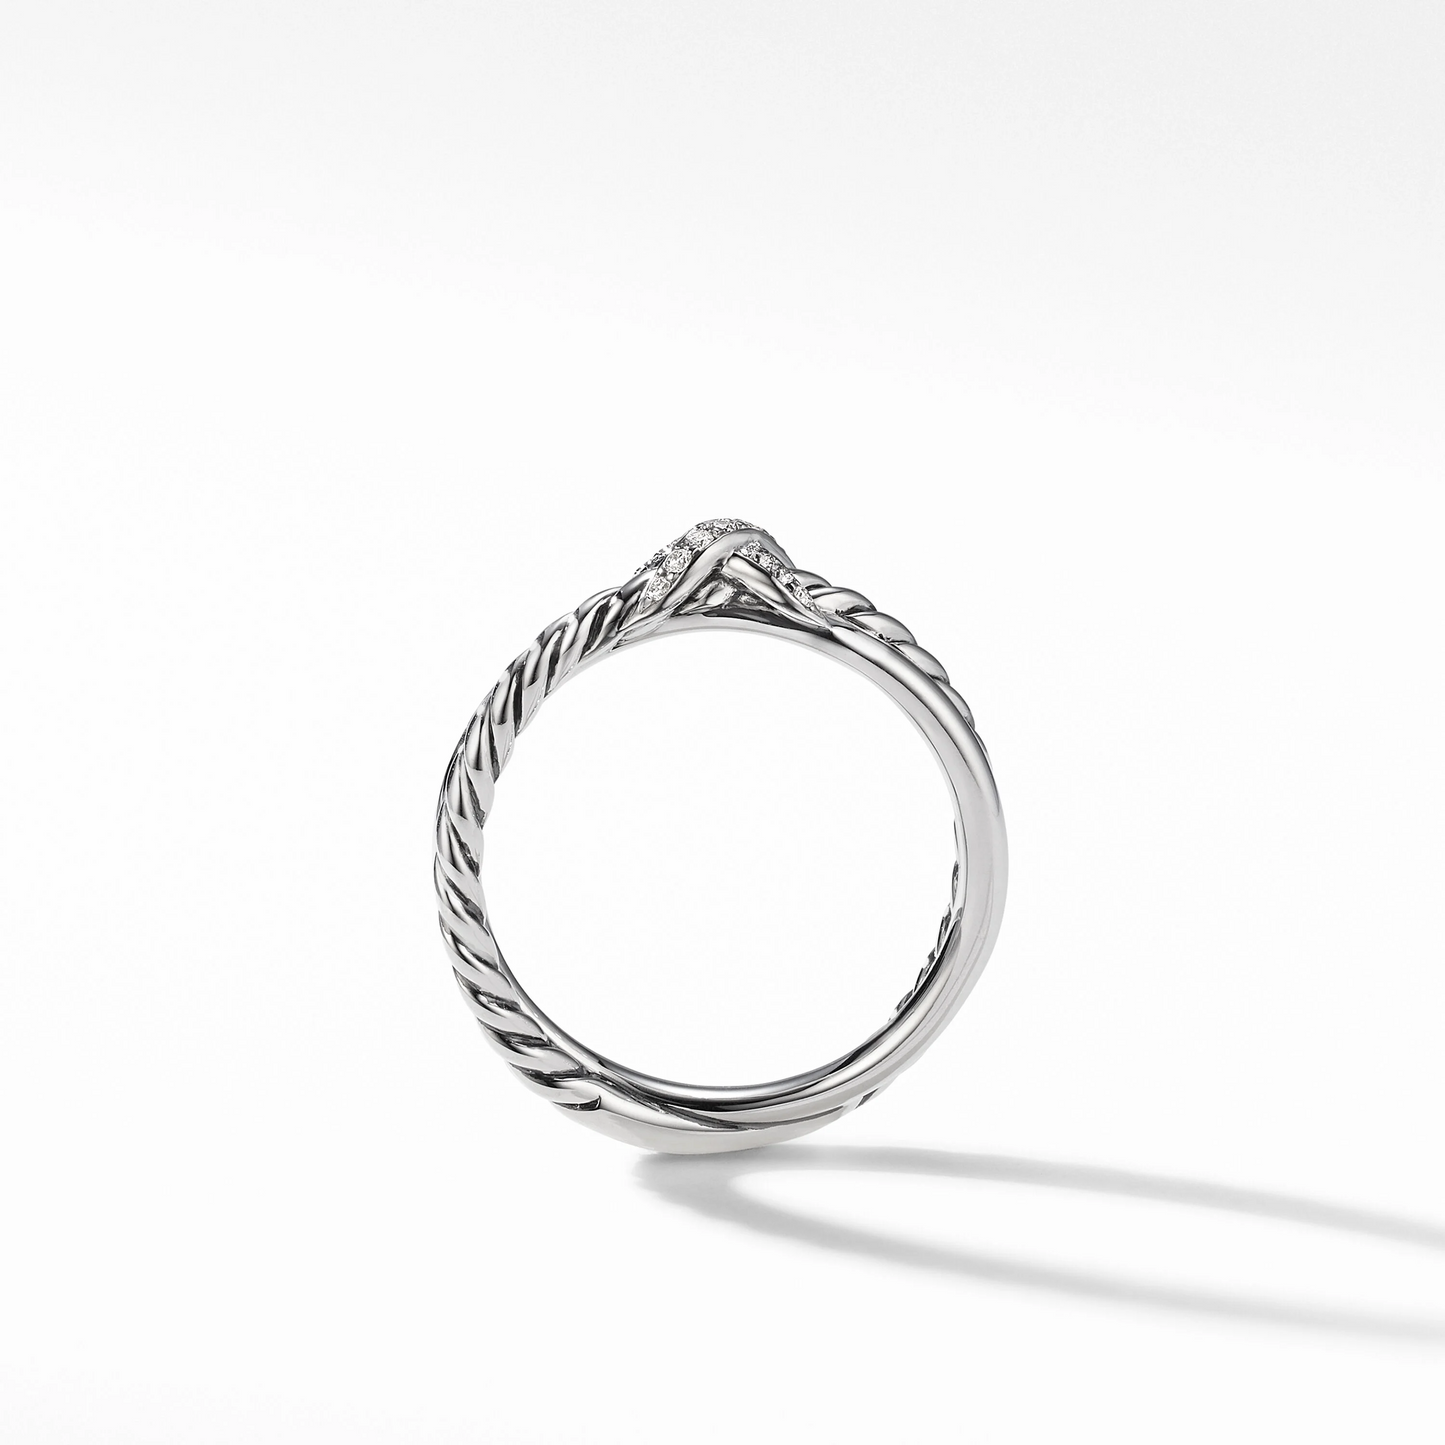 Petite X with Pave Round Lab Grown Diamond Ring  customdiamjewel   